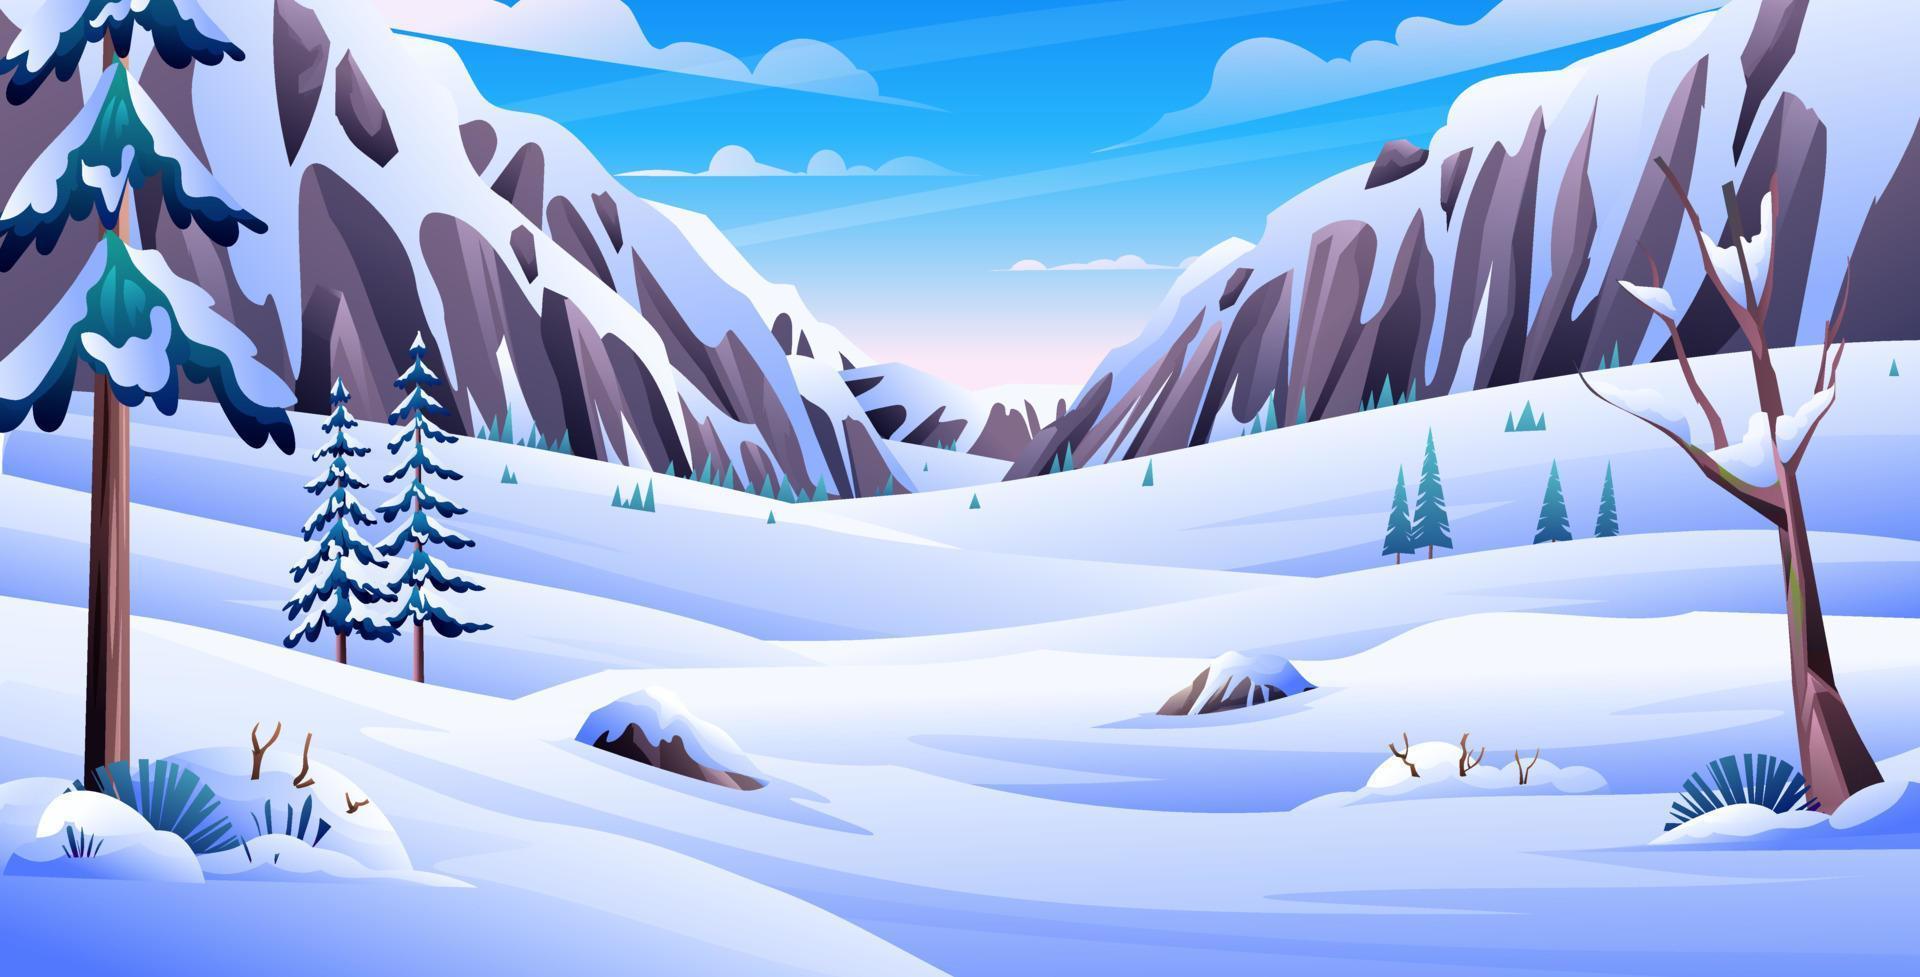 paisaje nevado de invierno con pinos y montañas rocosas ilustración de dibujos animados de fondo vector